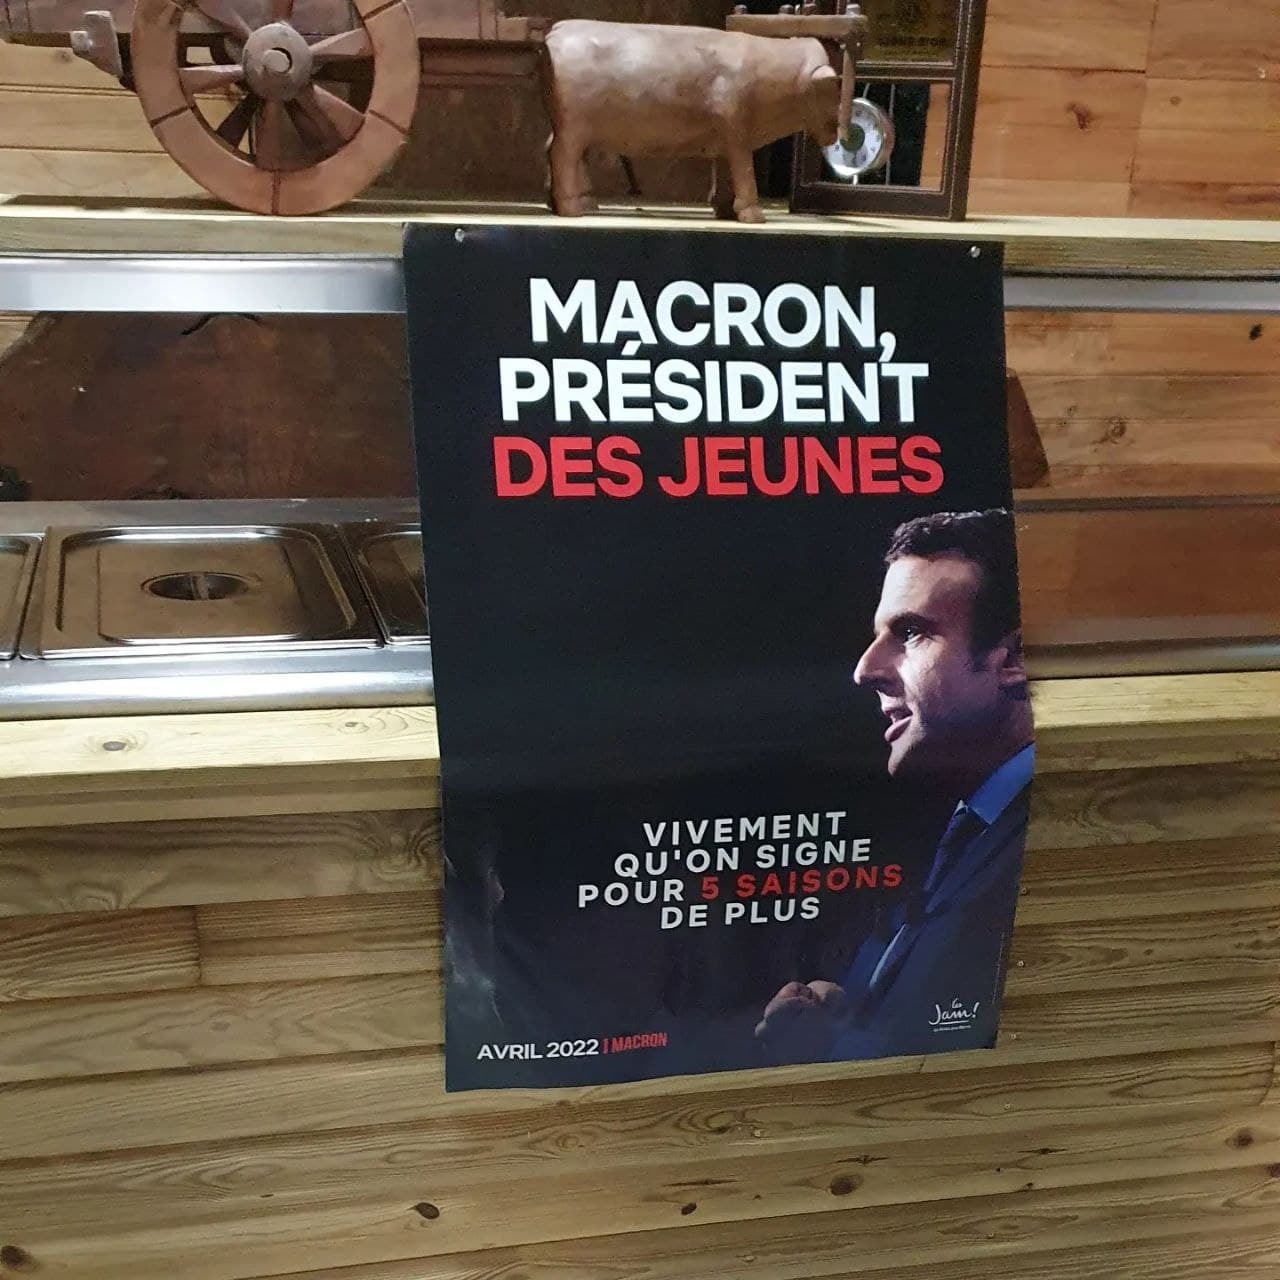 "Lancement de la campagne des Jeunes avec Macron 974"